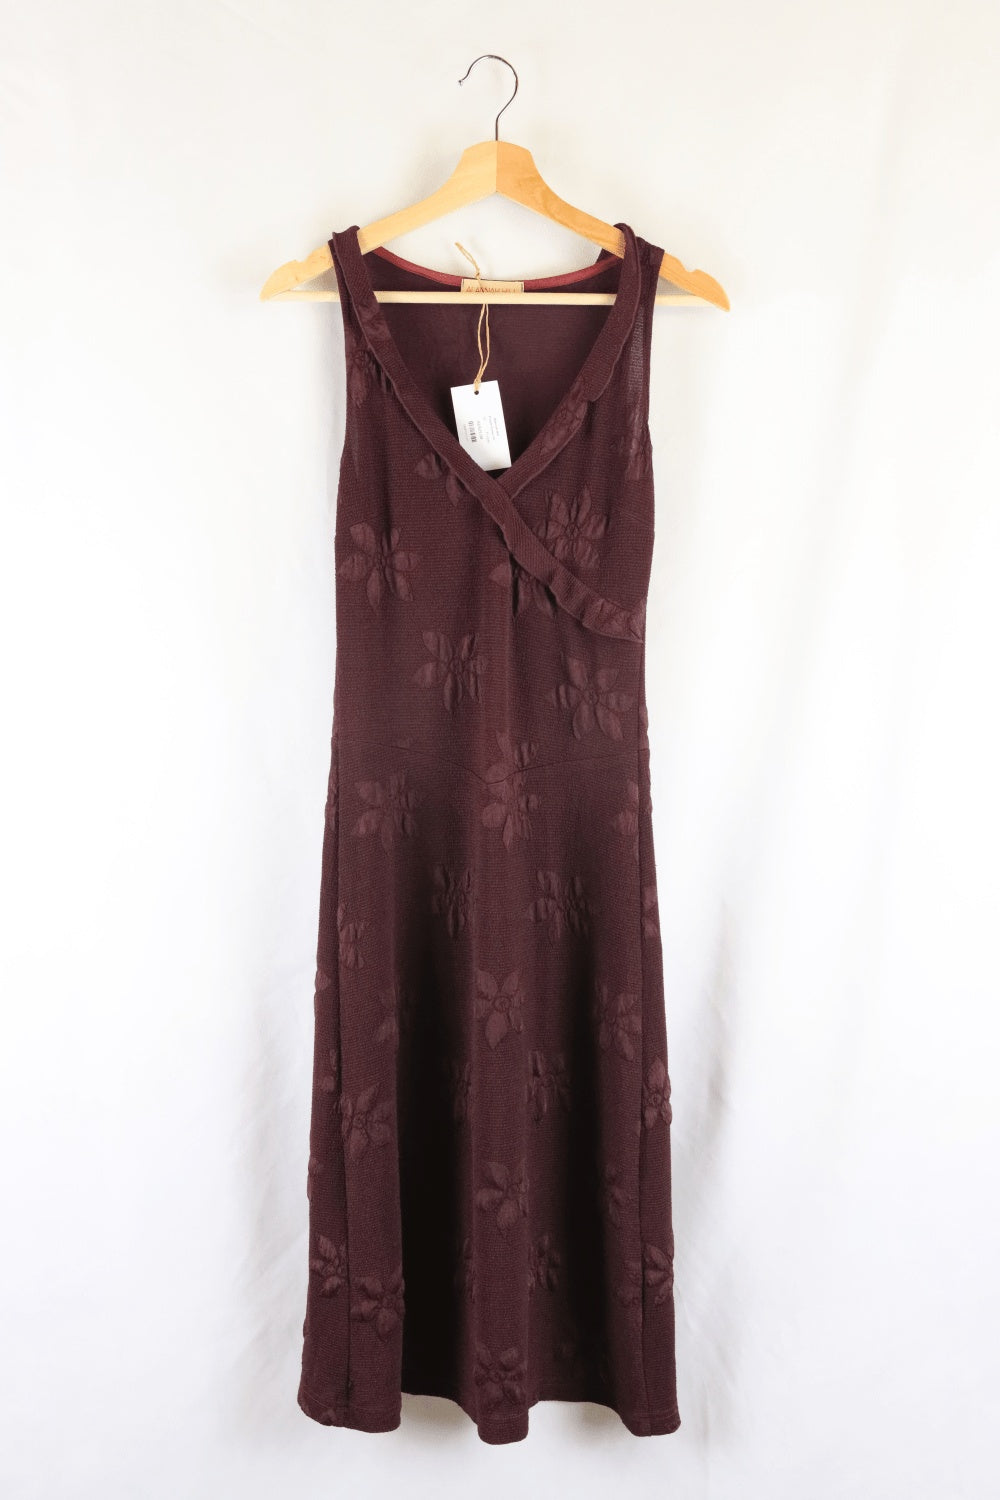 Alannah Hill Purple Dress 10